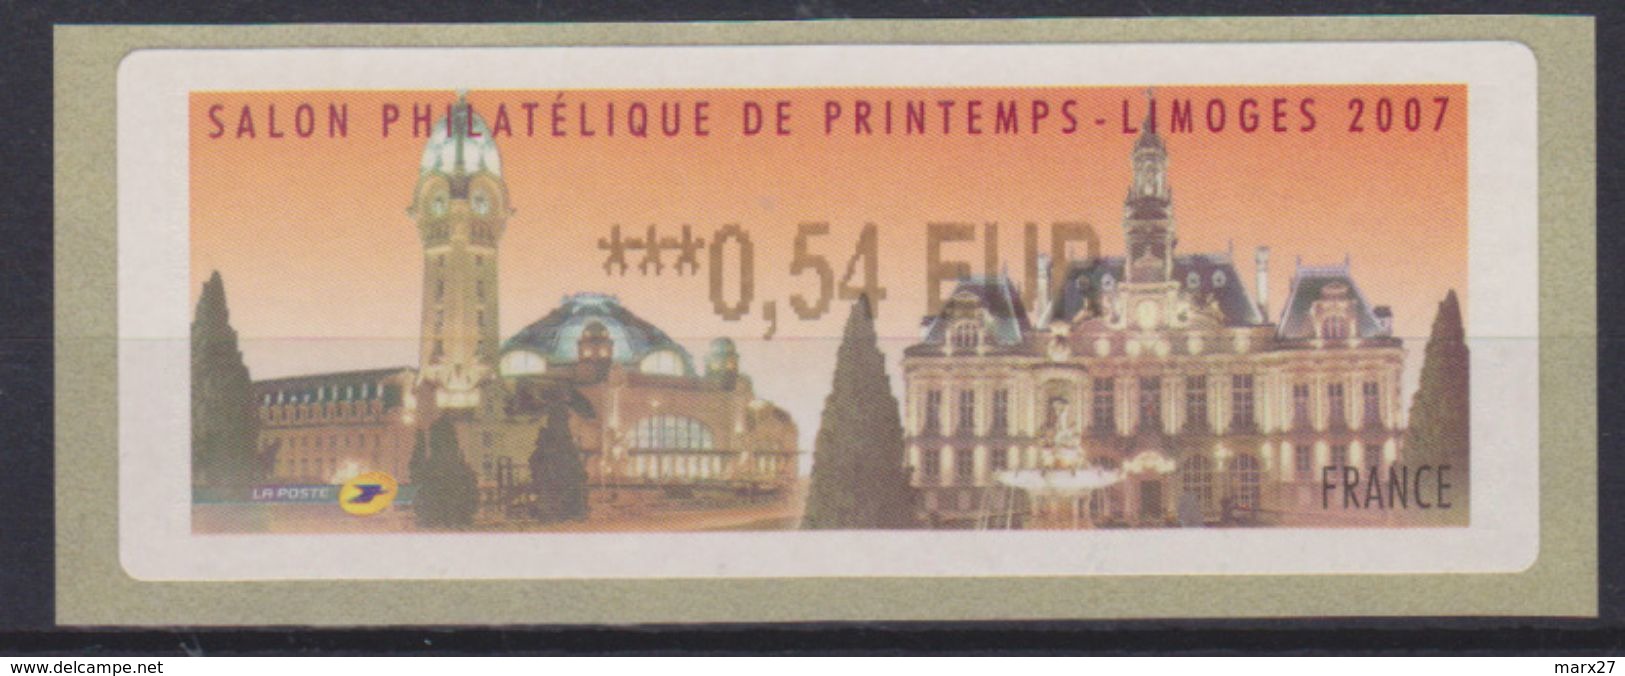 Vignette Salon Philatélique De Printemps Limoges 2007 (la Gare) 0.54 € - 1999-2009 Illustrated Franking Labels